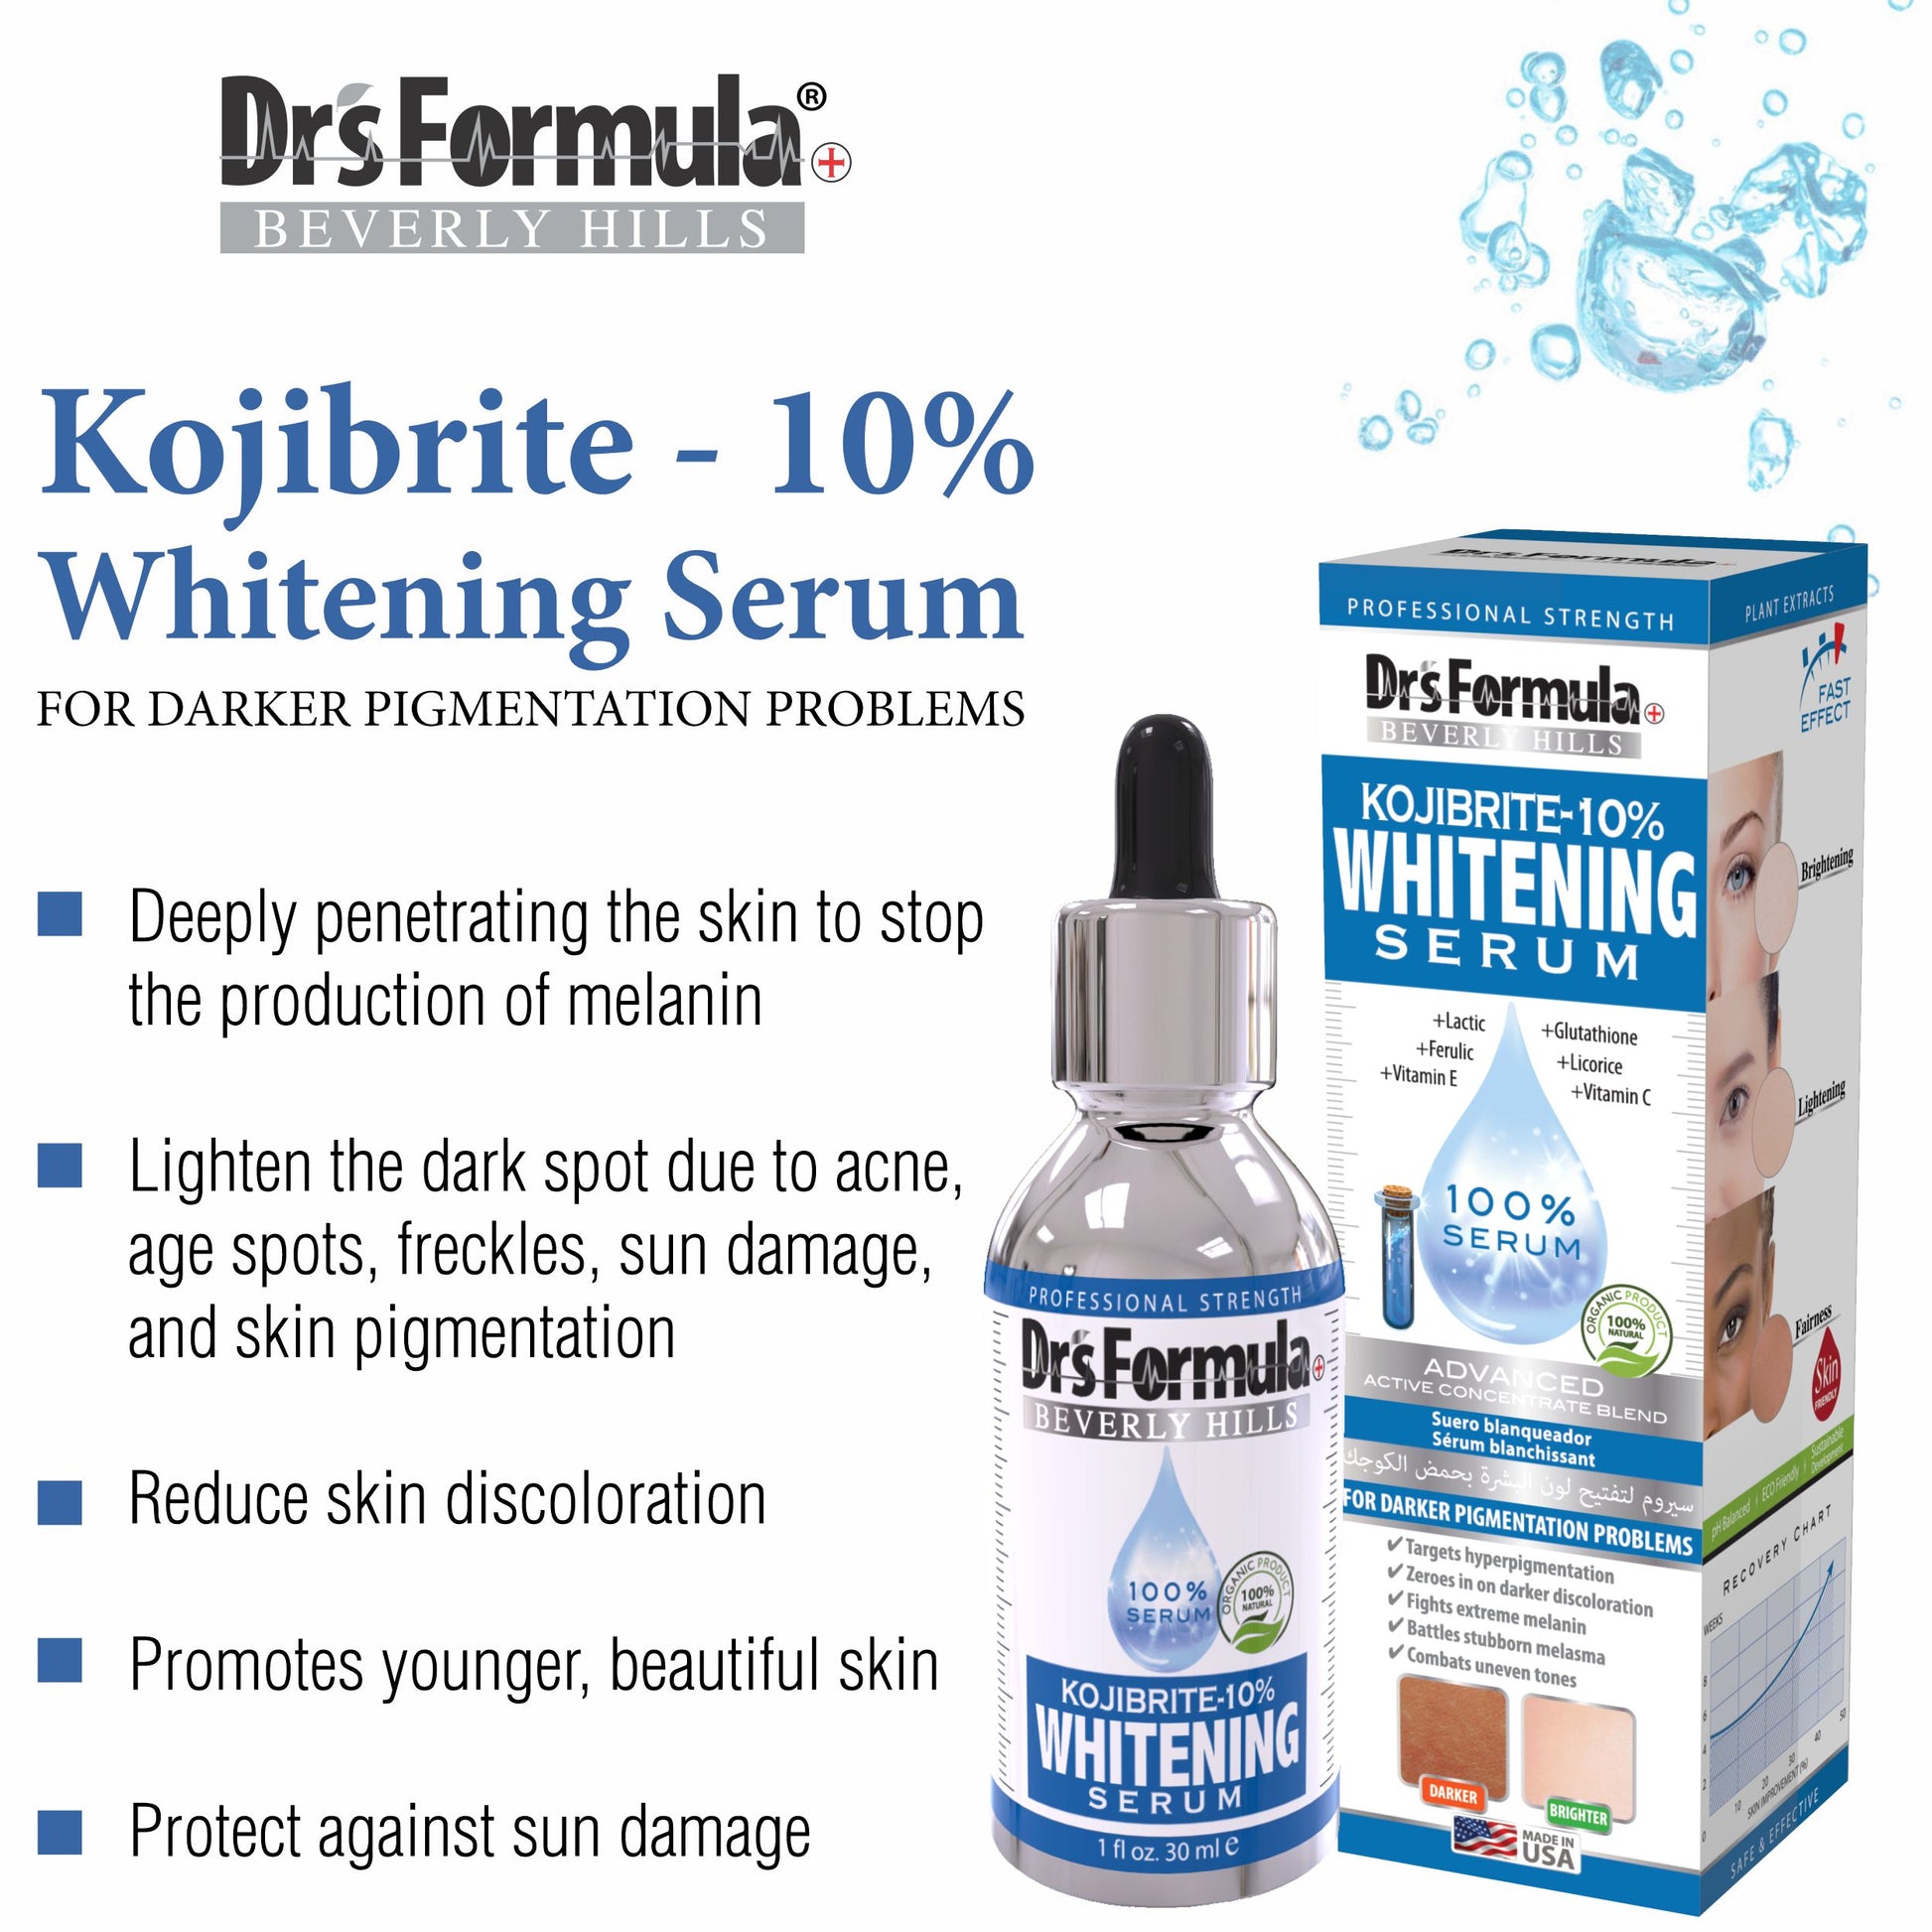 Kojibrite-10% Whitening Serum